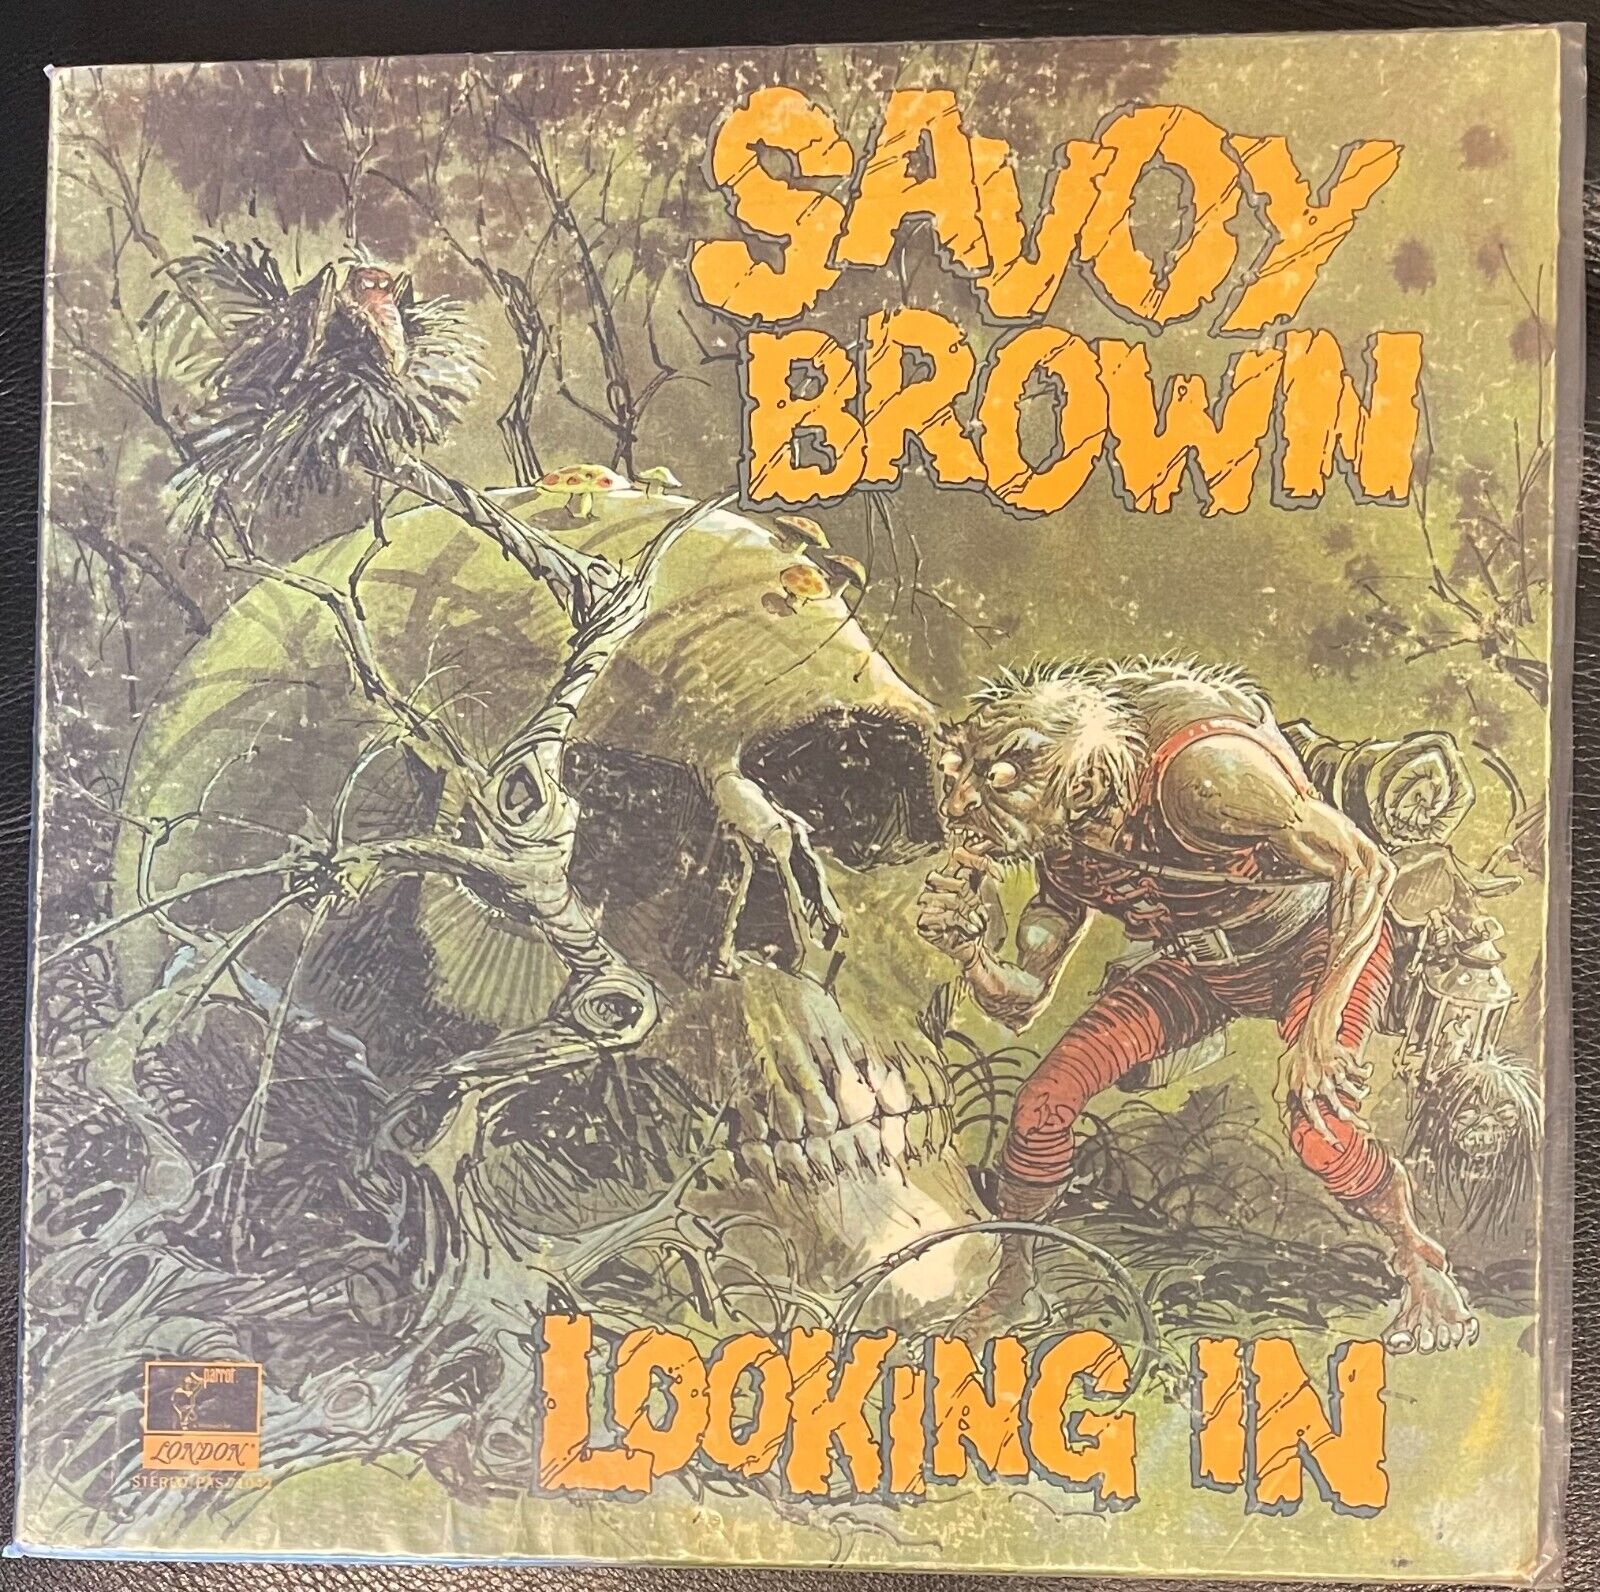 Savoy Brown- Looking In- Parrot PAS 71042- Orig 1970 Press